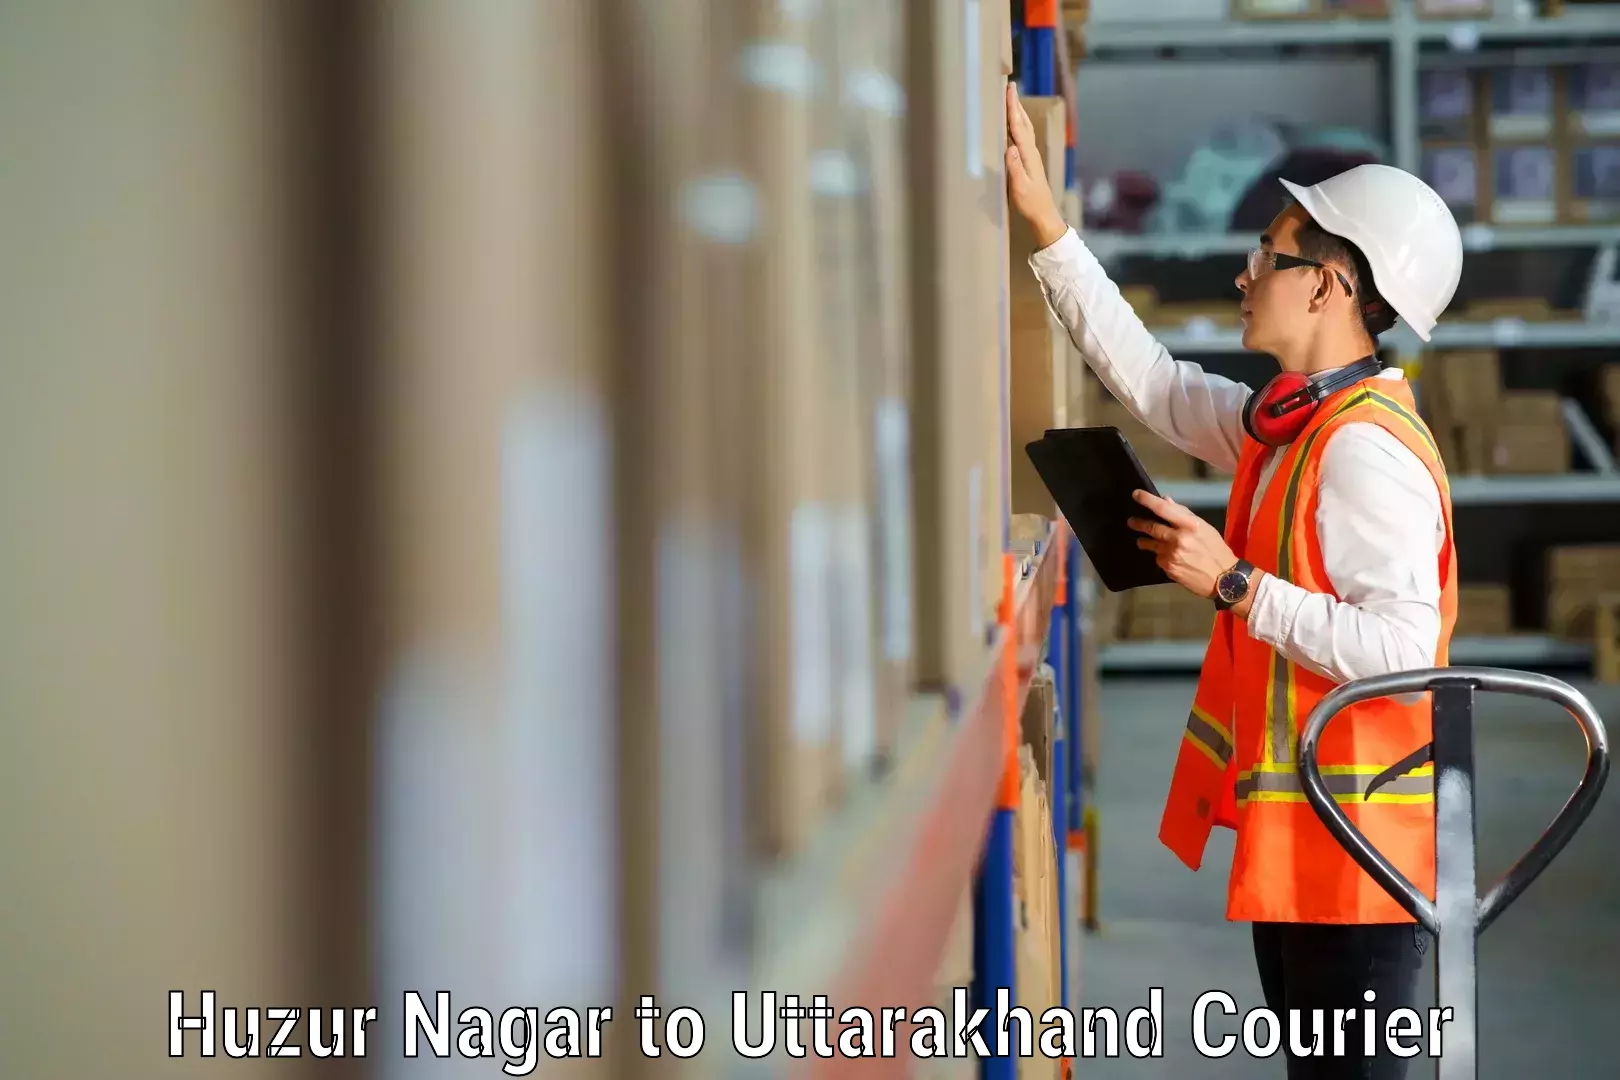 Furniture delivery service Huzur Nagar to Pithoragarh